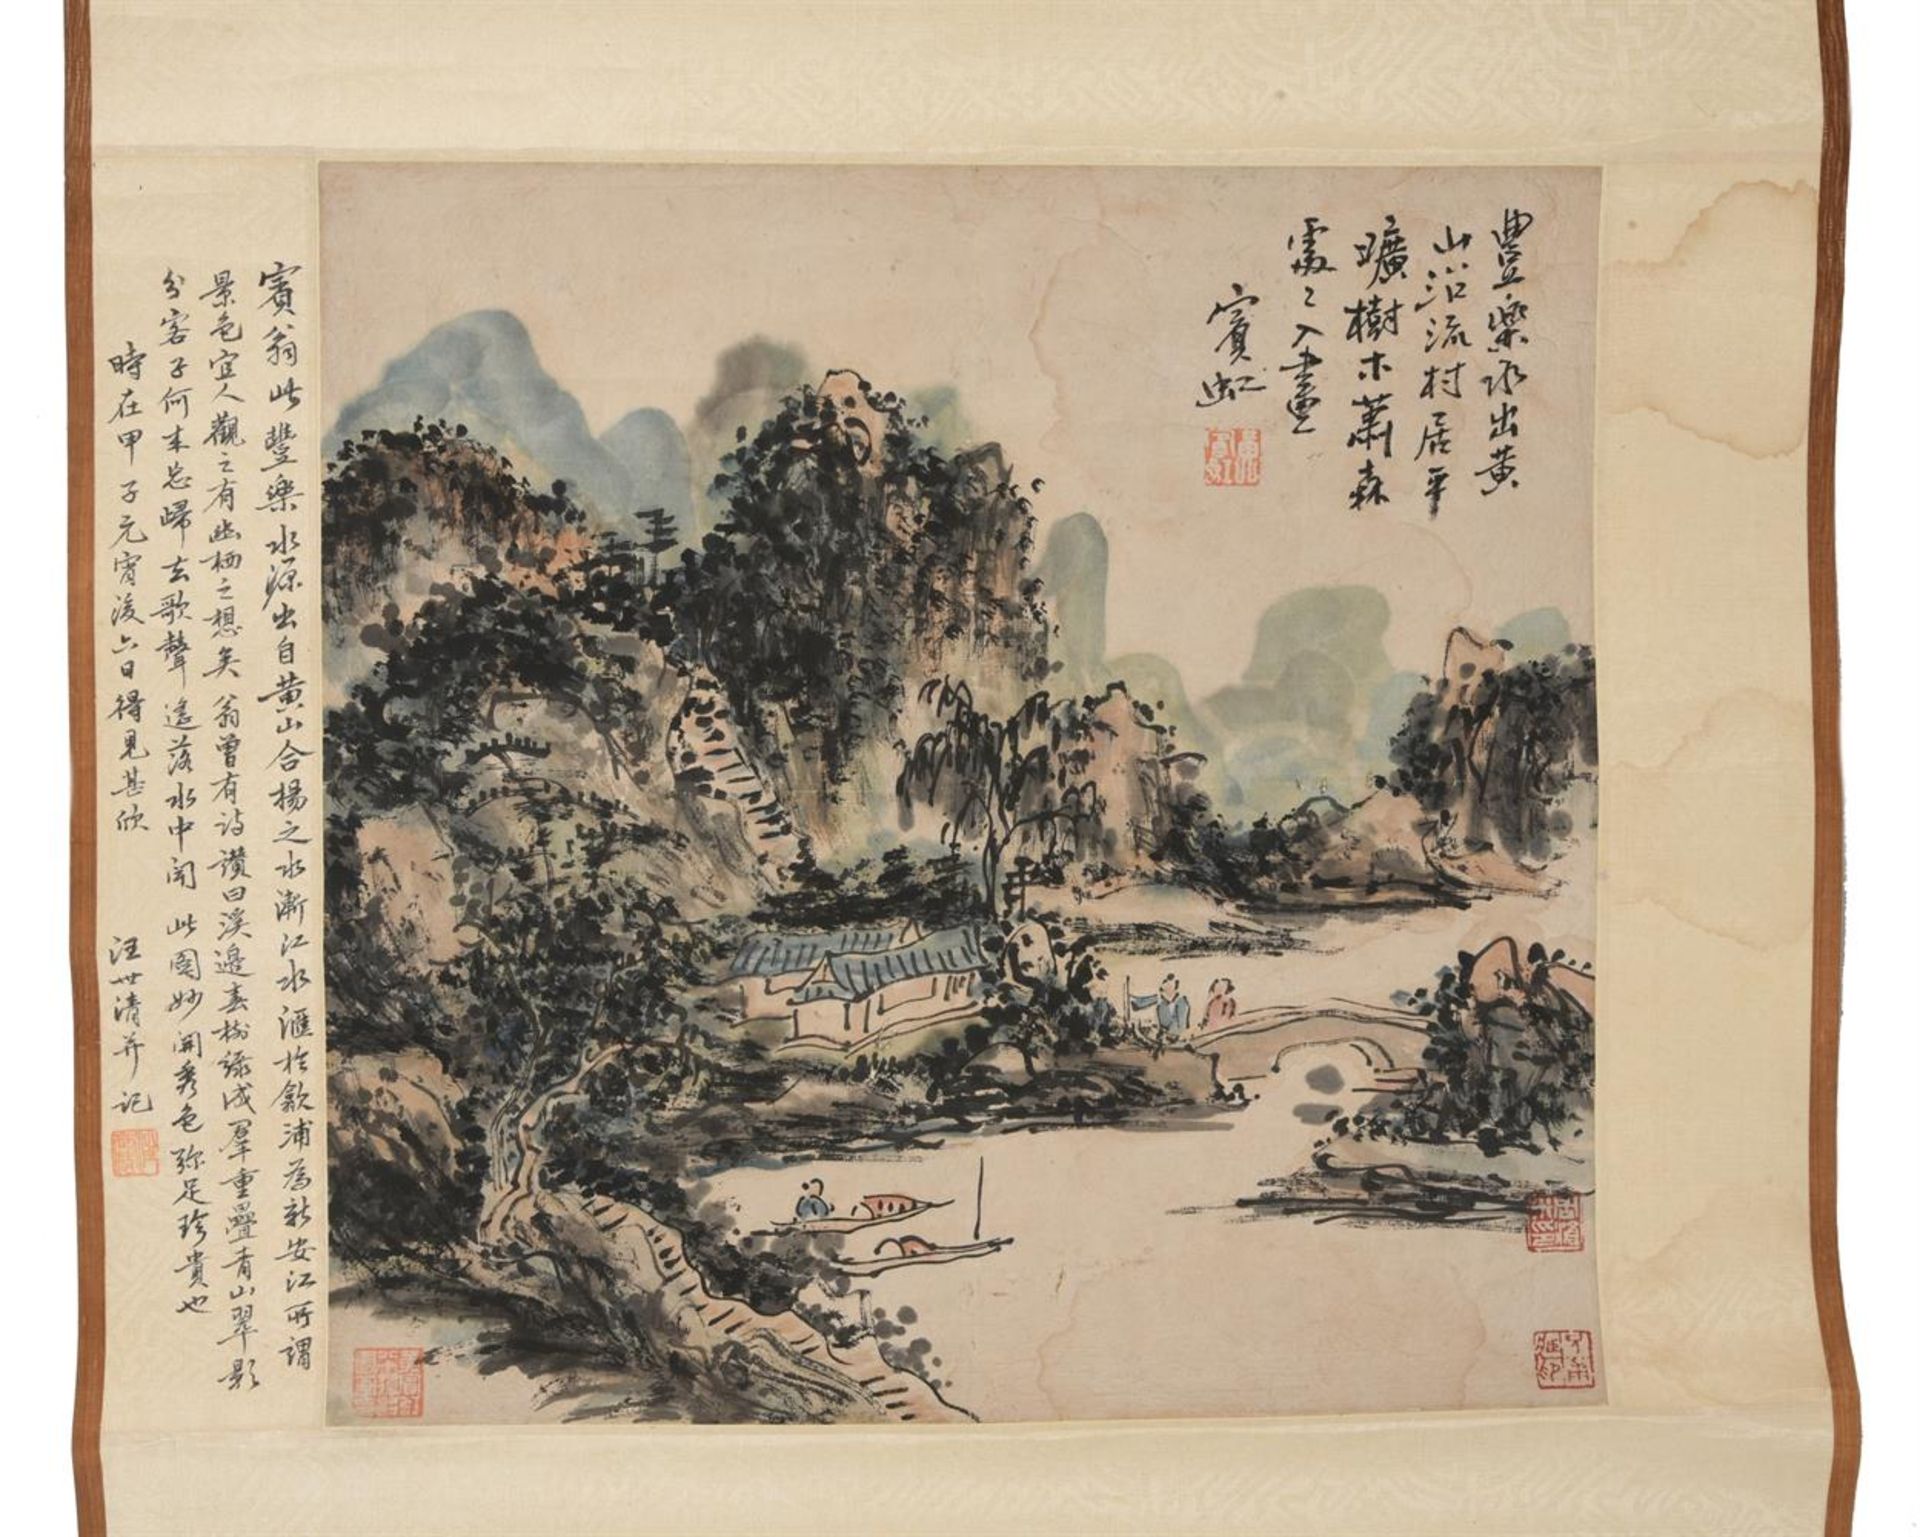 Attributed to Huang Binghong (1865-1955) - Image 2 of 2